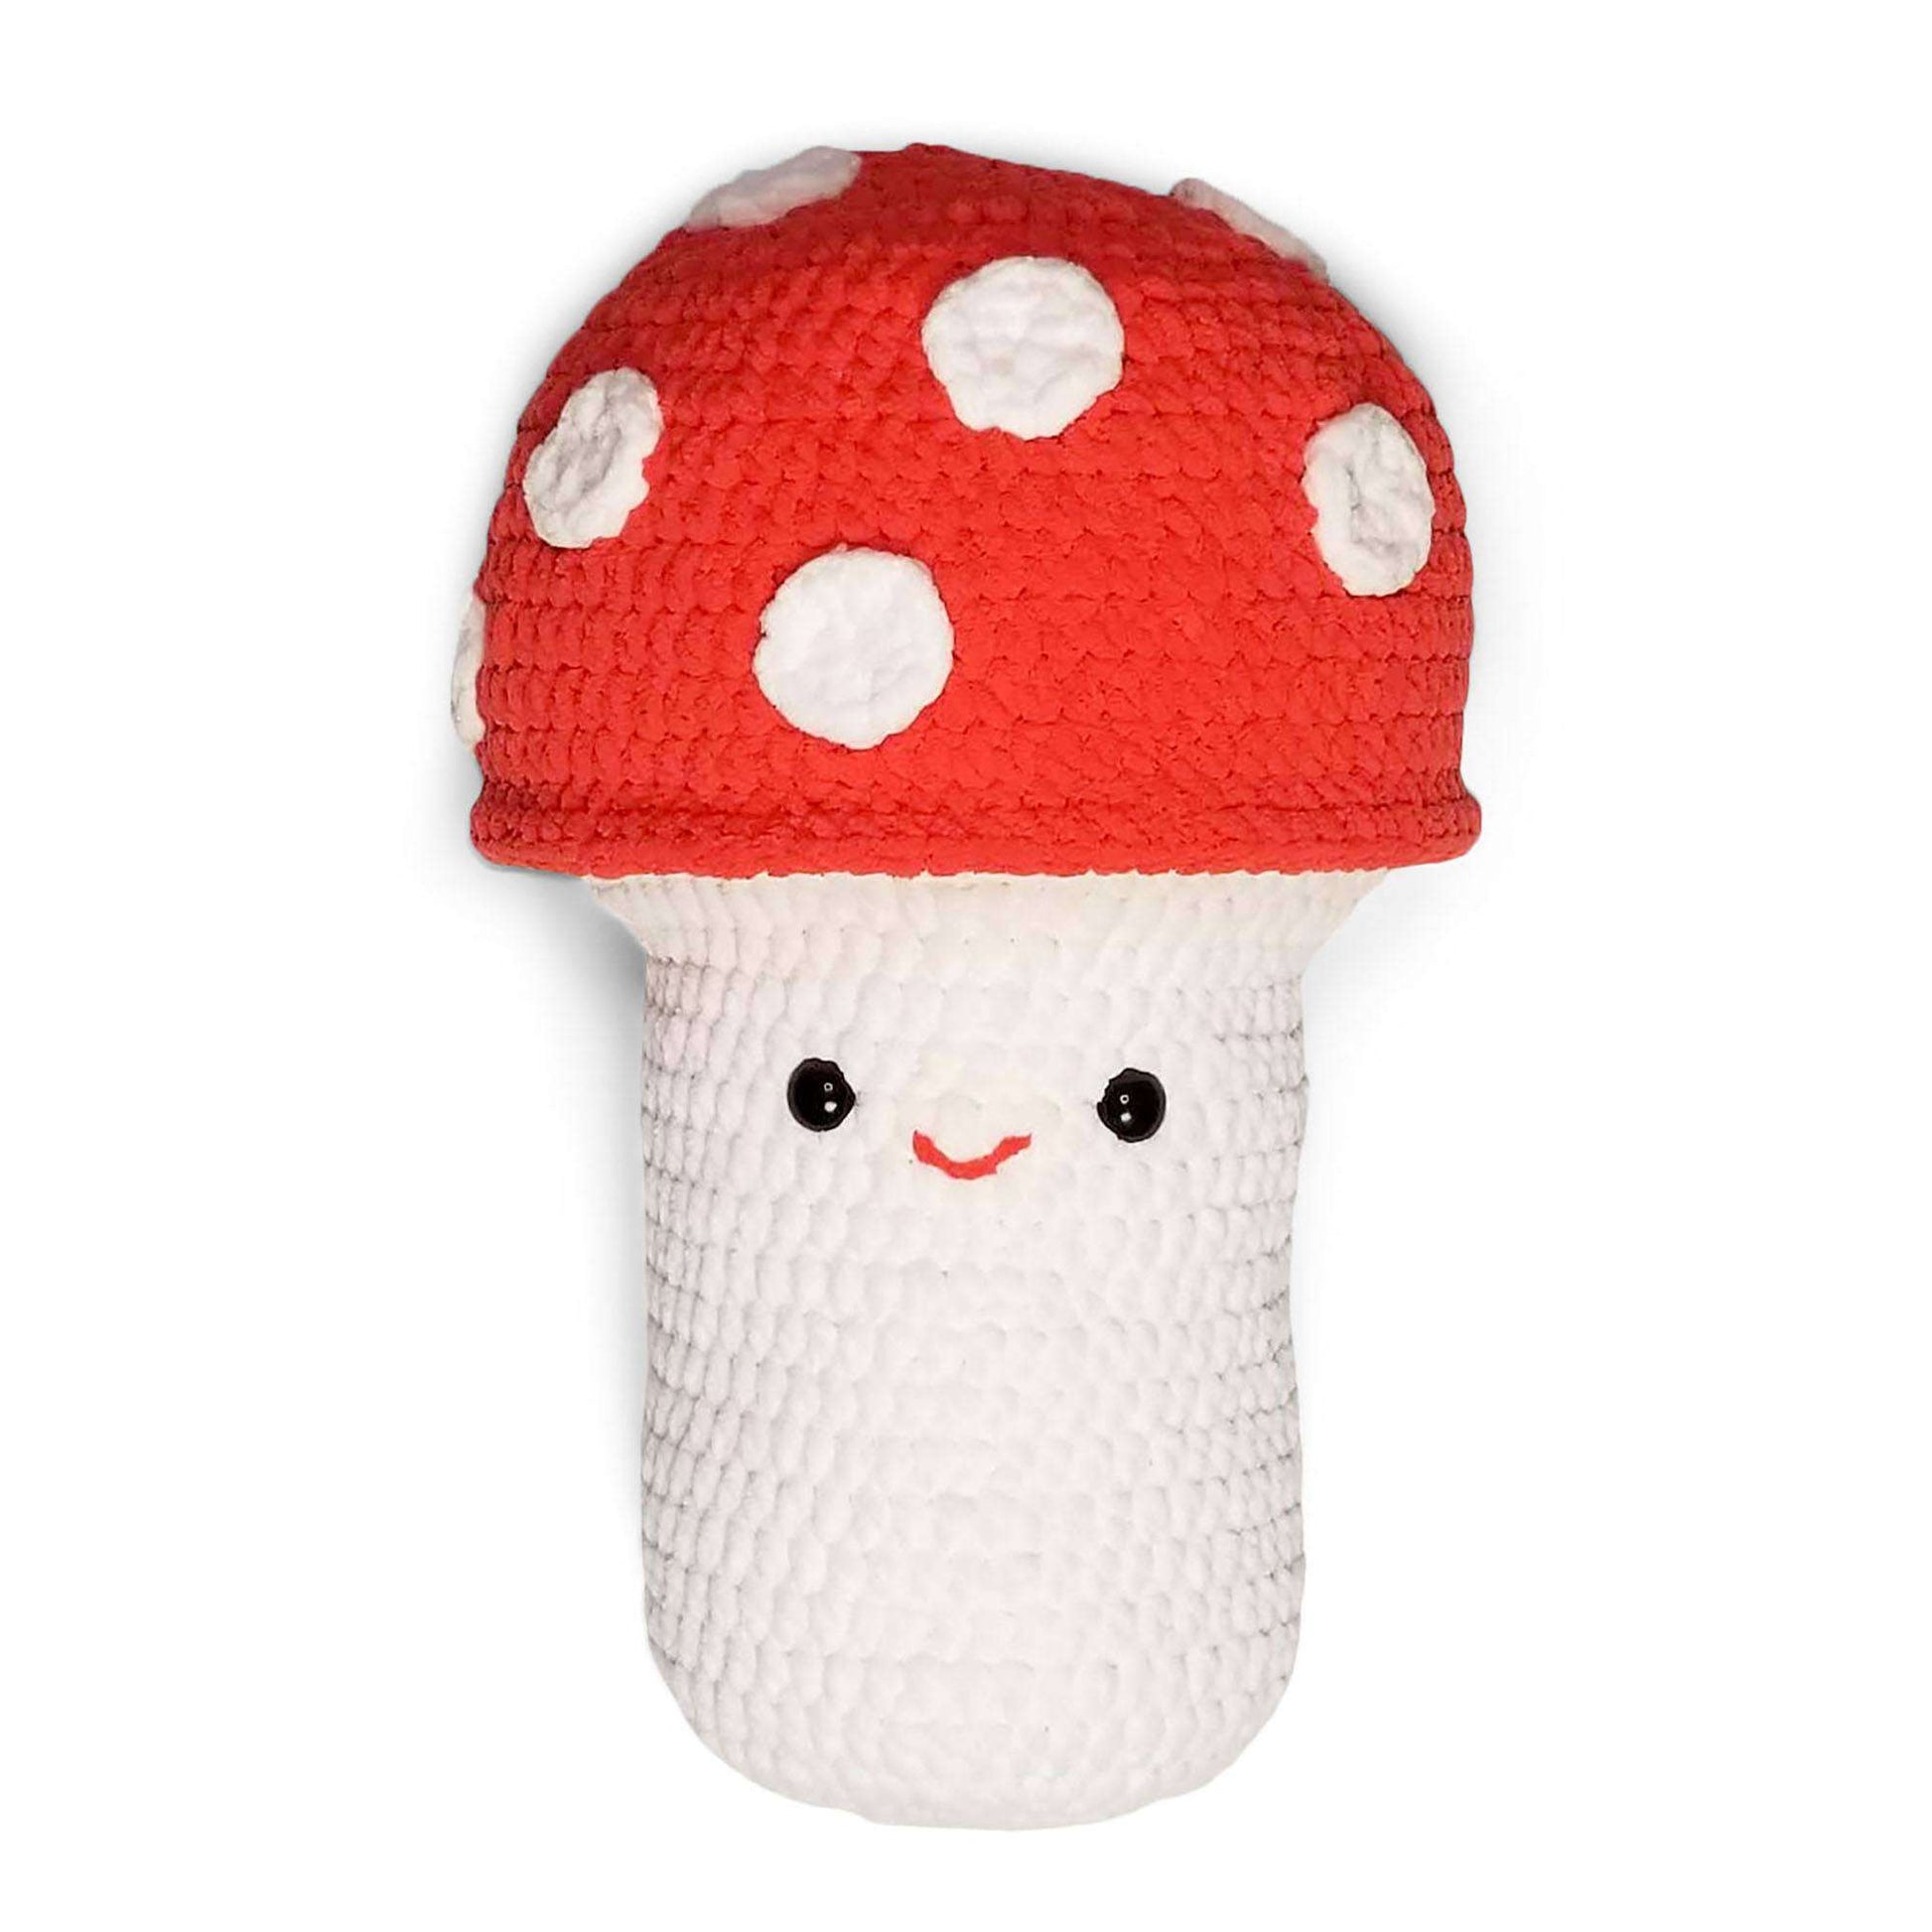 Free Bernat Crochet Mushroom Stuffie By Moogly Pattern